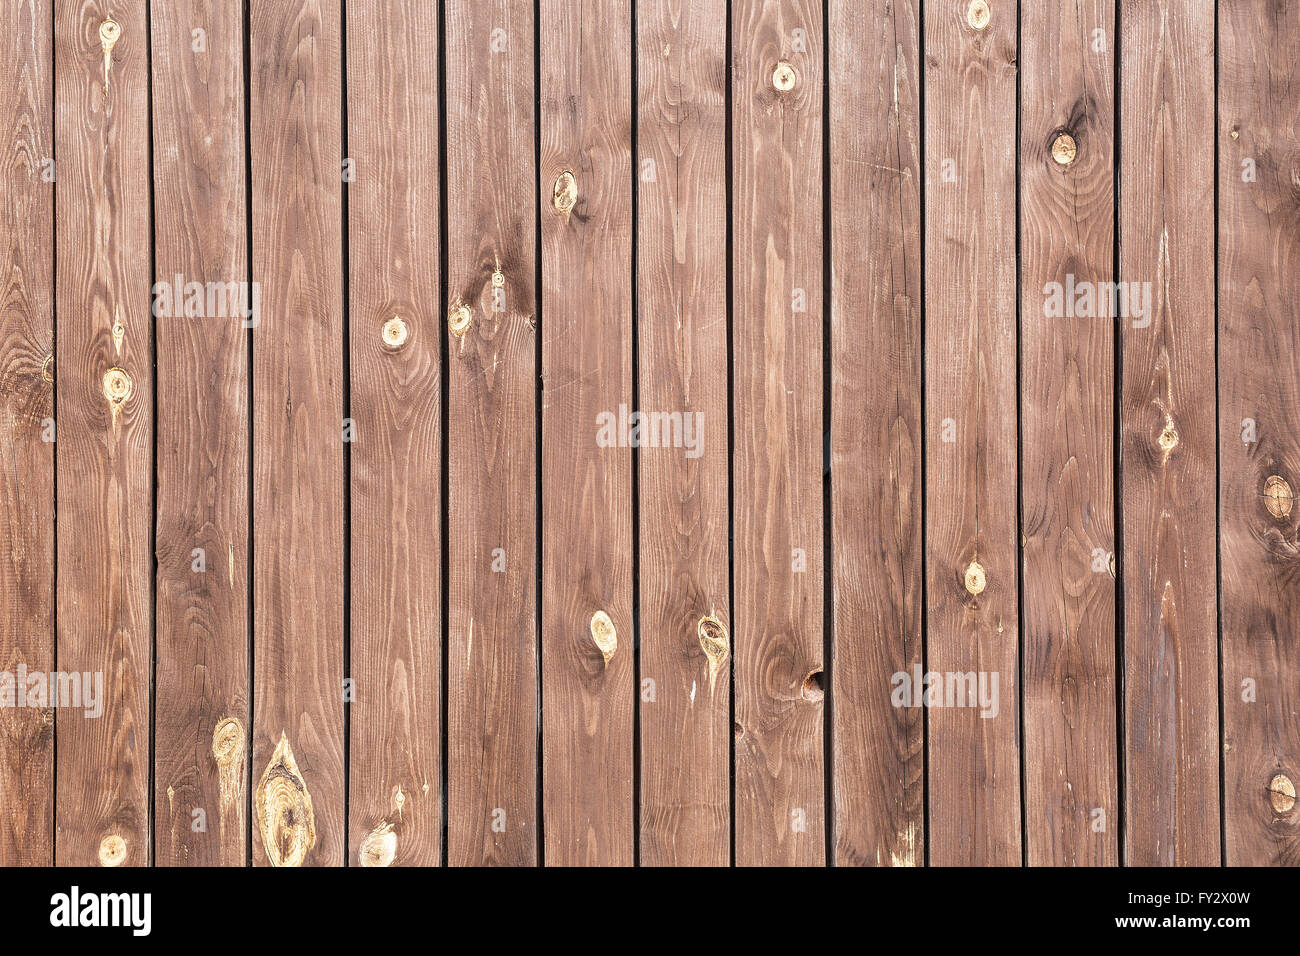 Vecchio legno marrone dello sfondo. Immagine della struttura in legno. Foto Stock